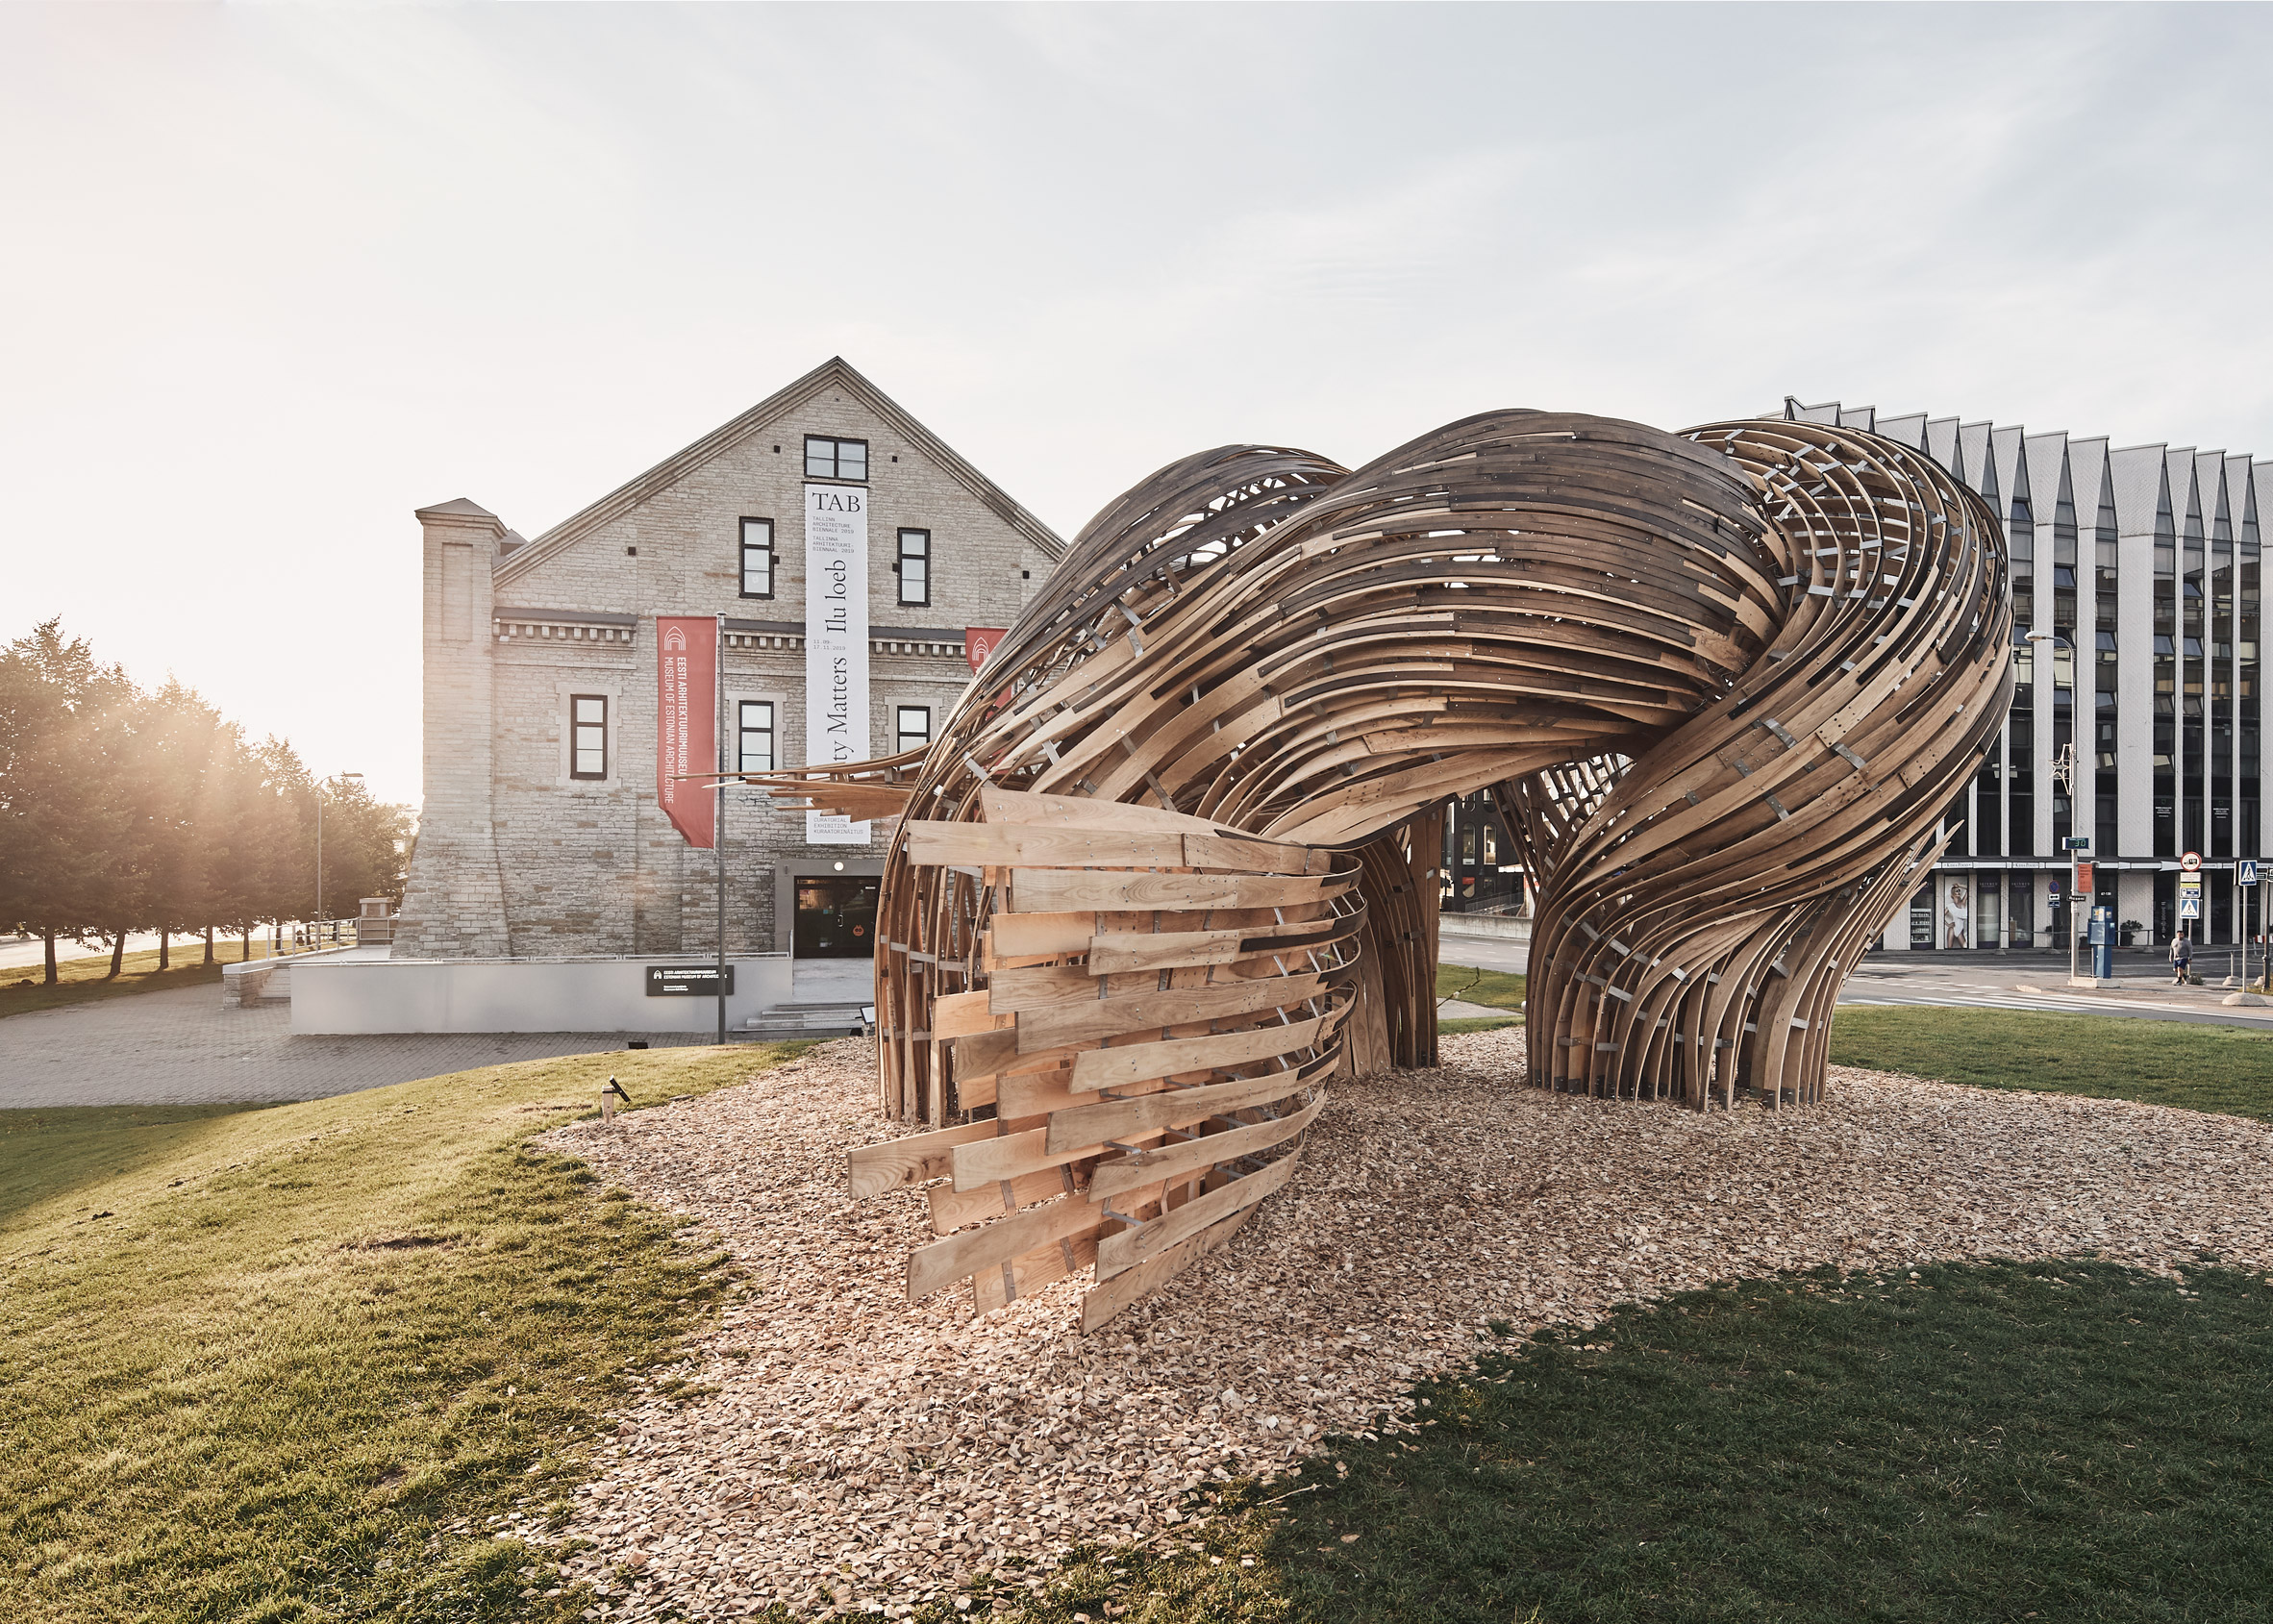 Steampunk at the 2019 Tallinn Architecture Biennial